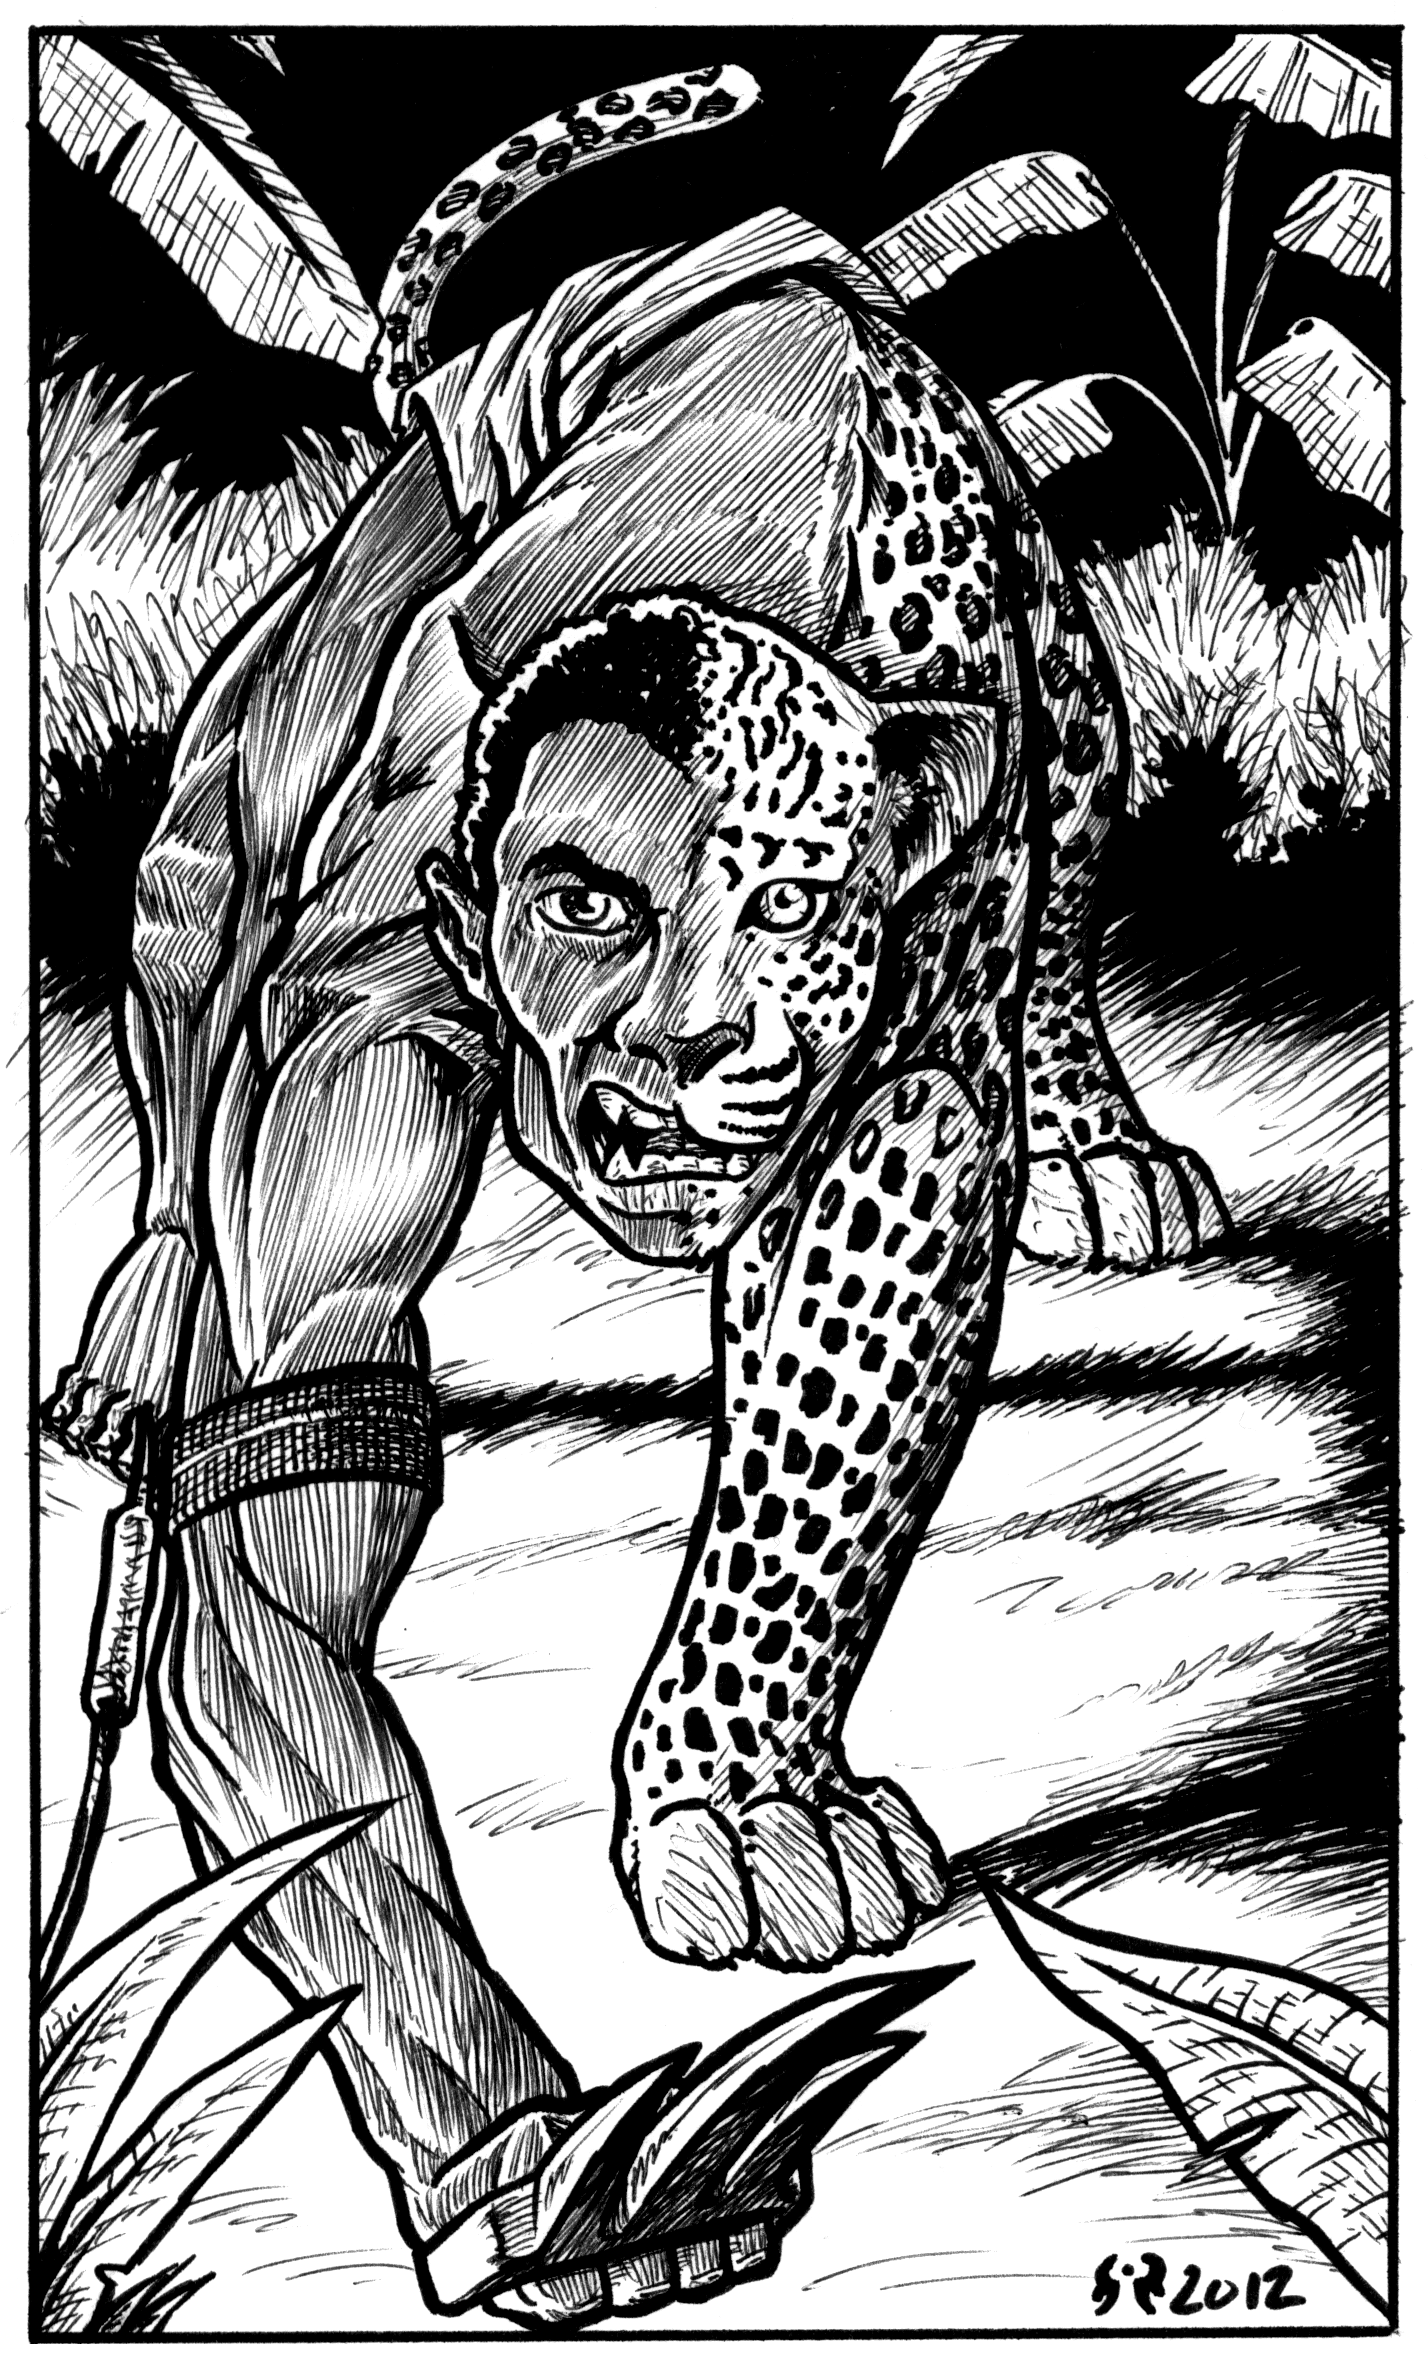 Wereleopard by Luigi Castellani